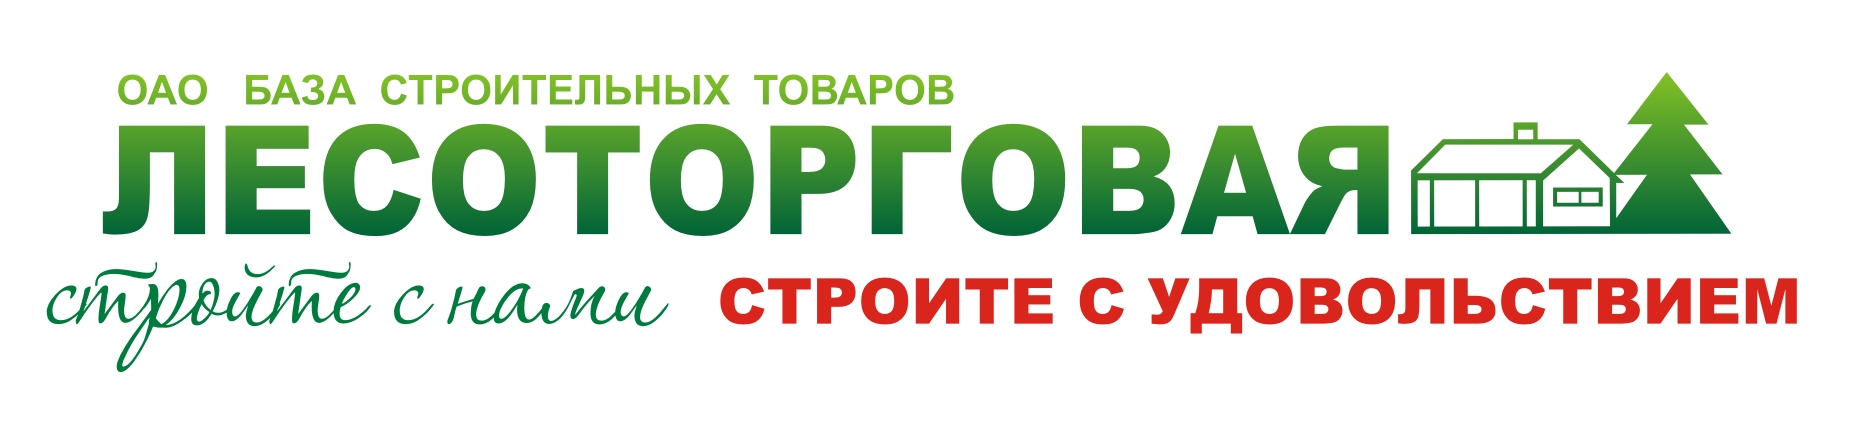 ОАО База строительных товаров "Лесоторговая" BST Logo photo - 1